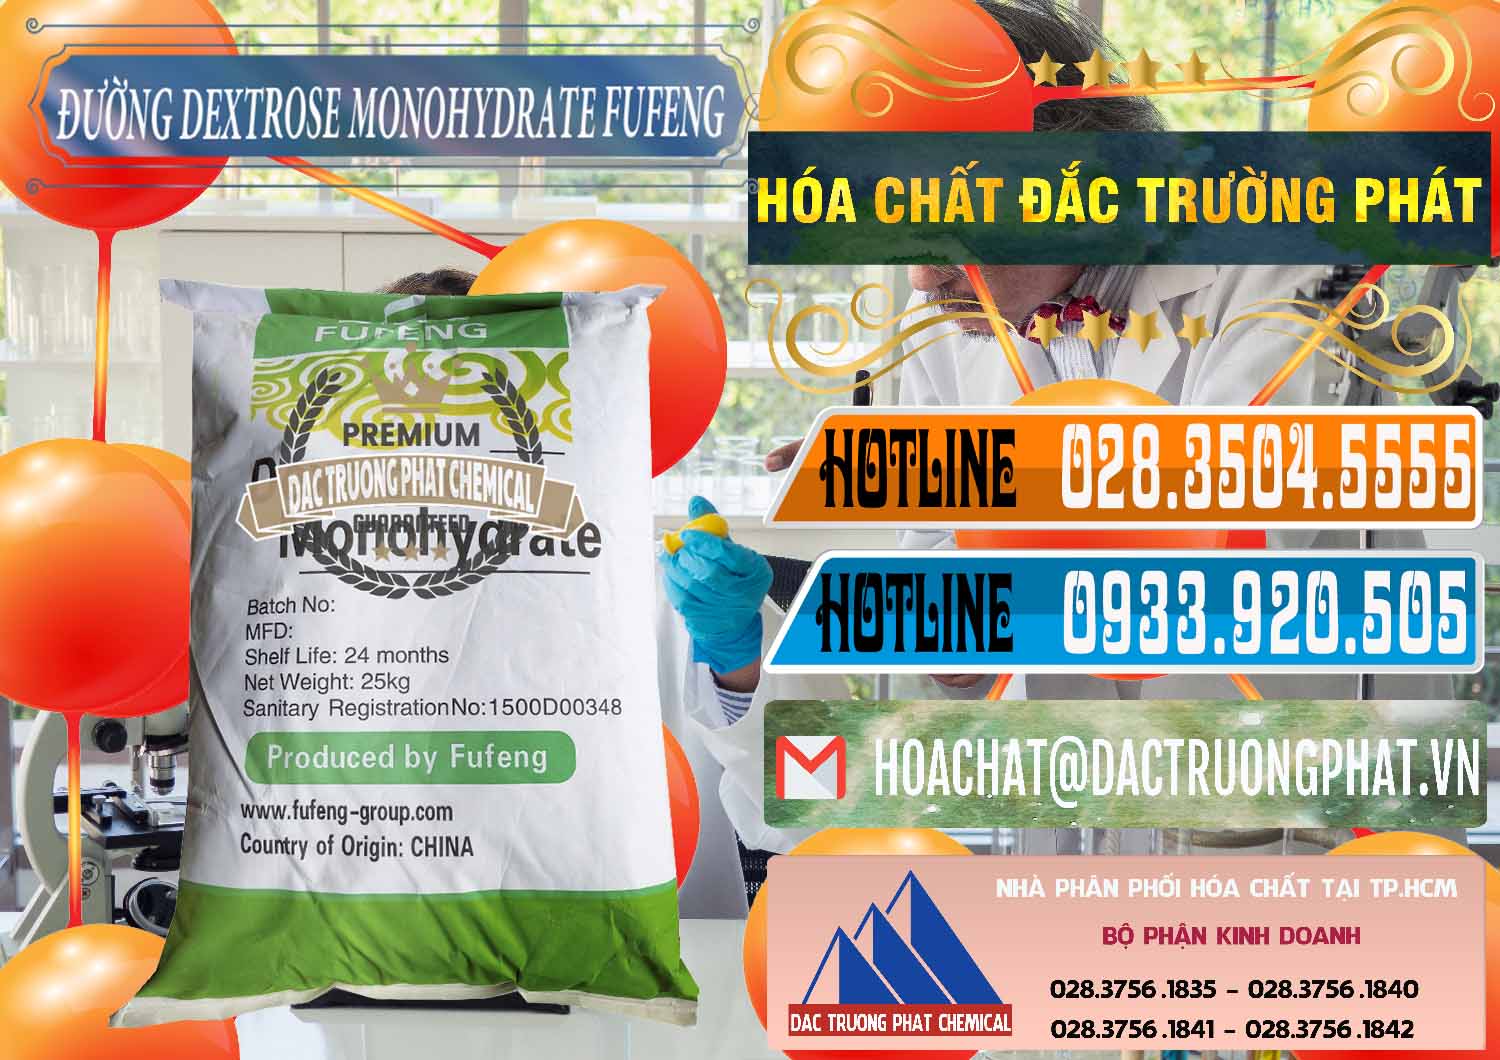 Đơn vị nhập khẩu & bán Đường Dextrose Monohydrate Food Grade Fufeng Trung Quốc China - 0223 - Nơi cung cấp - kinh doanh hóa chất tại TP.HCM - stmp.net